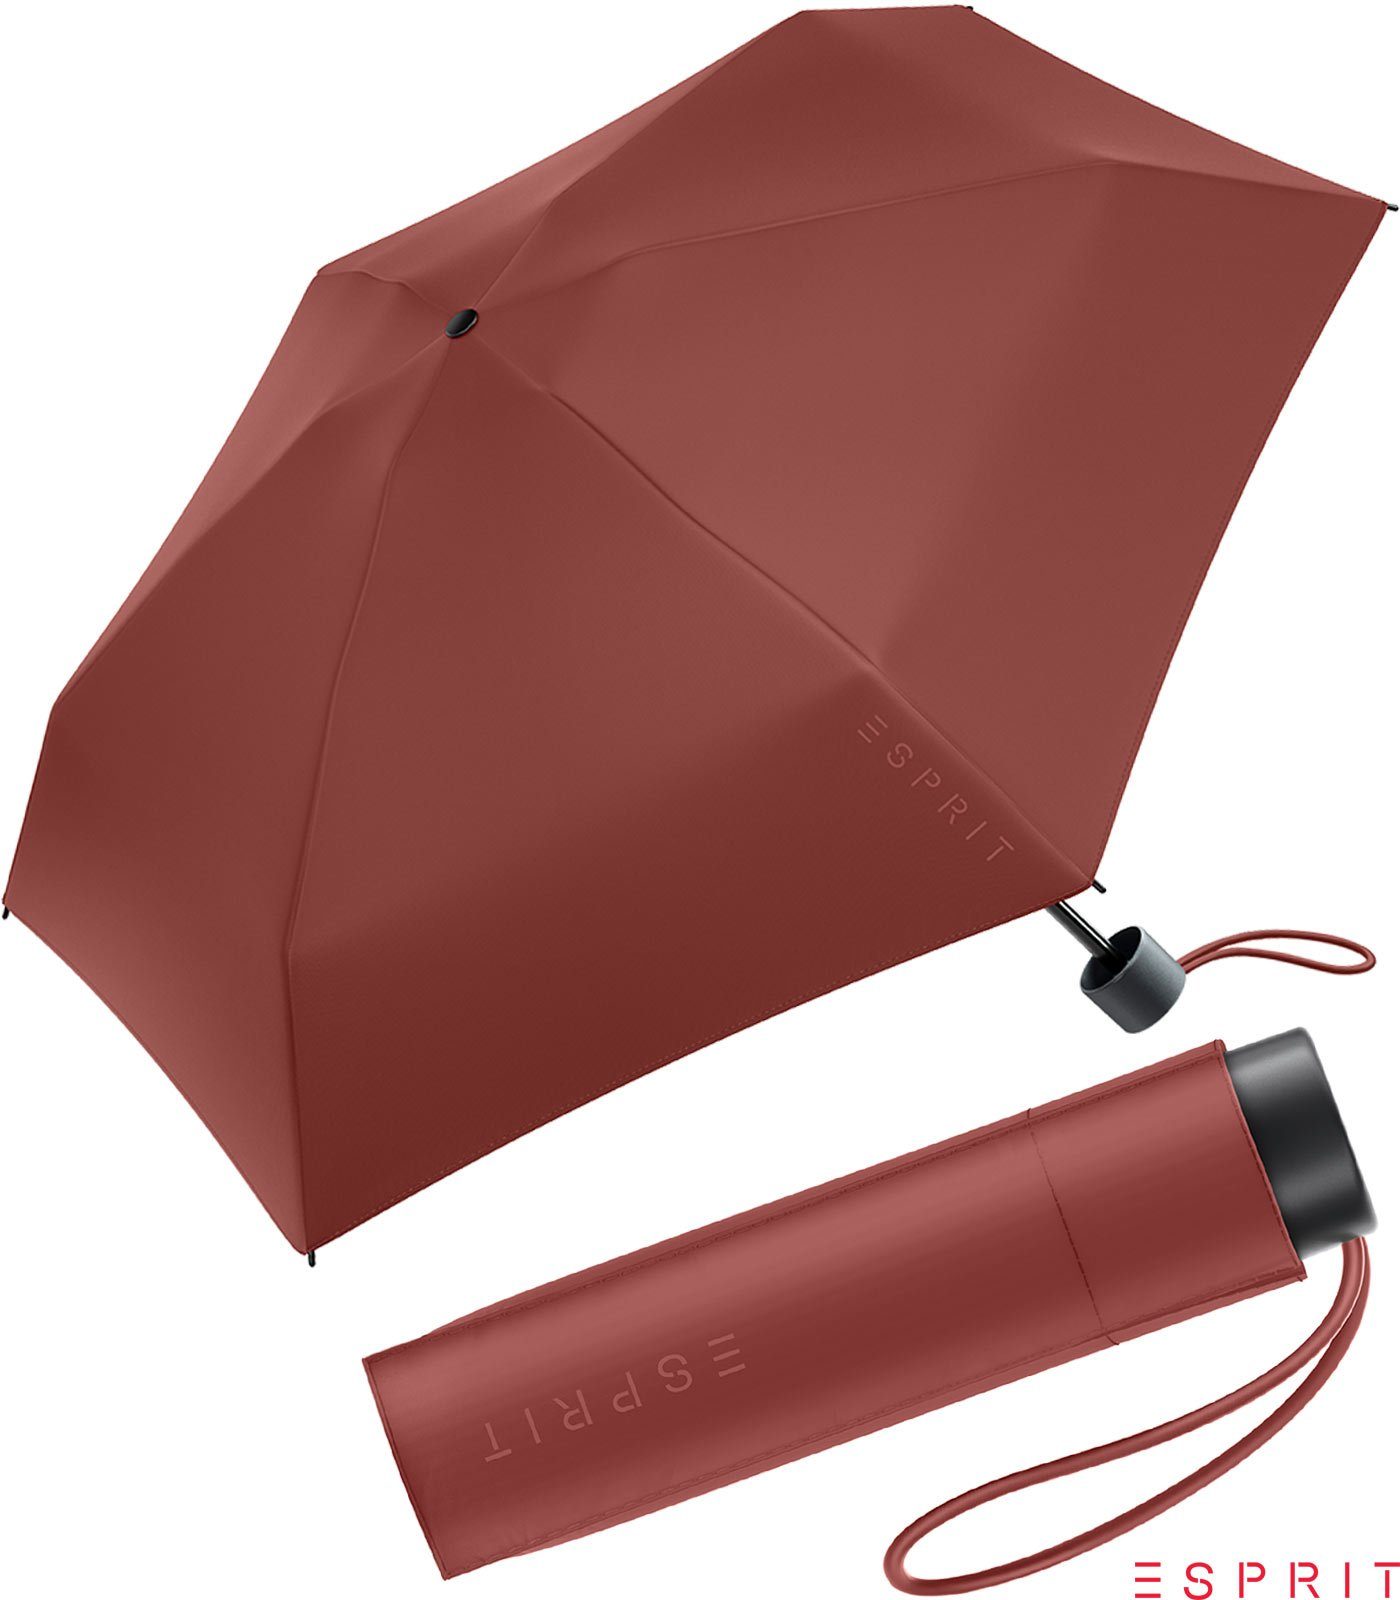 Esprit Taschenregenschirm Super Mini Damen Petito HW 2022 - russet brown, winzig klein, in den neuen Trendfarben braun